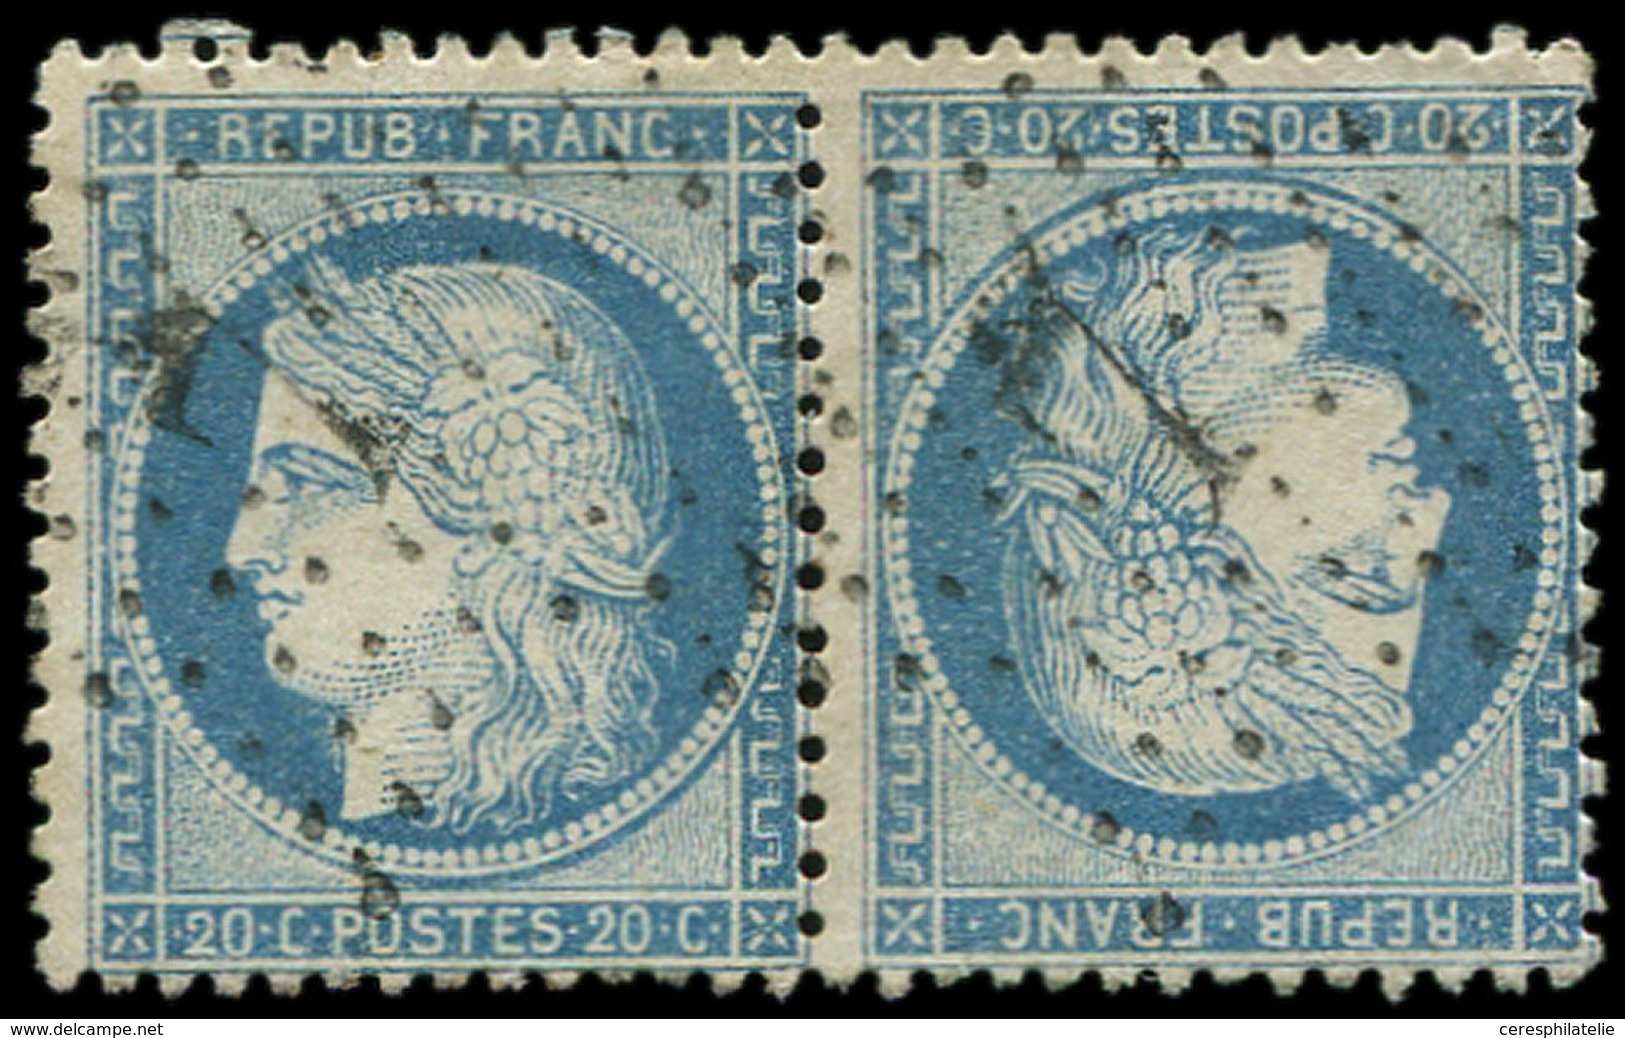 SIEGE DE PARIS - T37c 20c. Bleu, TETE-BECHE Obl. Etoile 7, Déf. Dans Un Angle, Aspect TB - 1870 Assedio Di Parigi